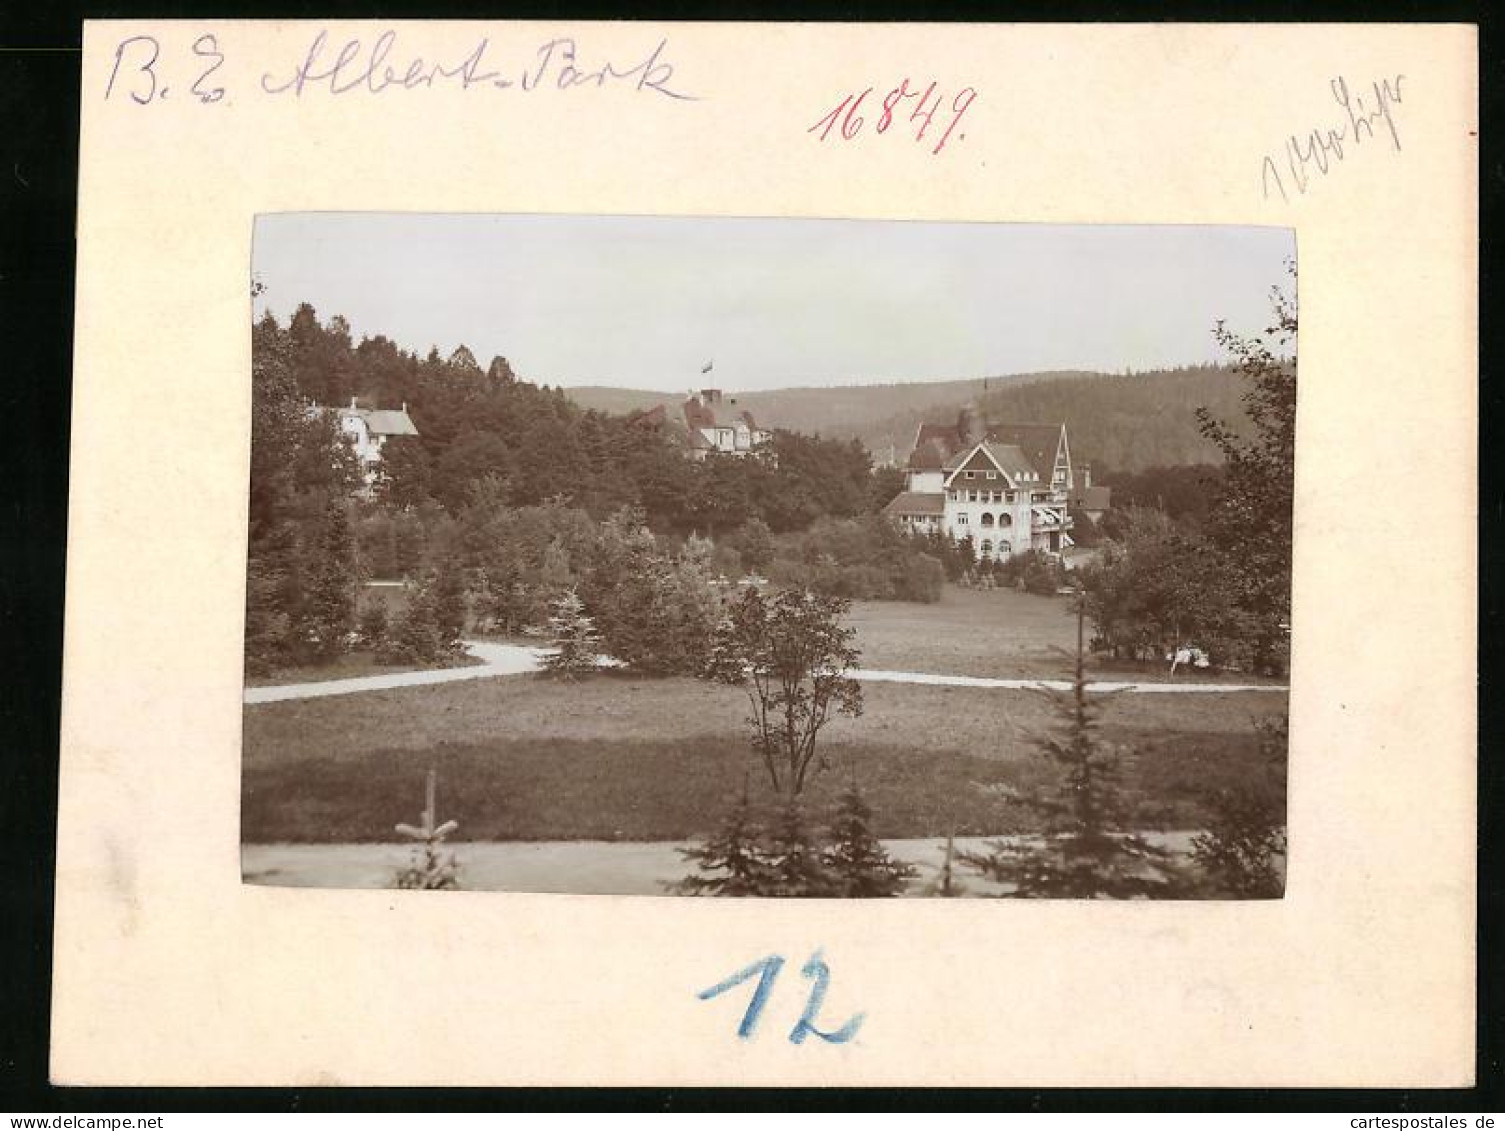 Fotografie Brück & Sohn Meissen, Ansicht Bad Elster, Partie Im Albert-Park  - Orte